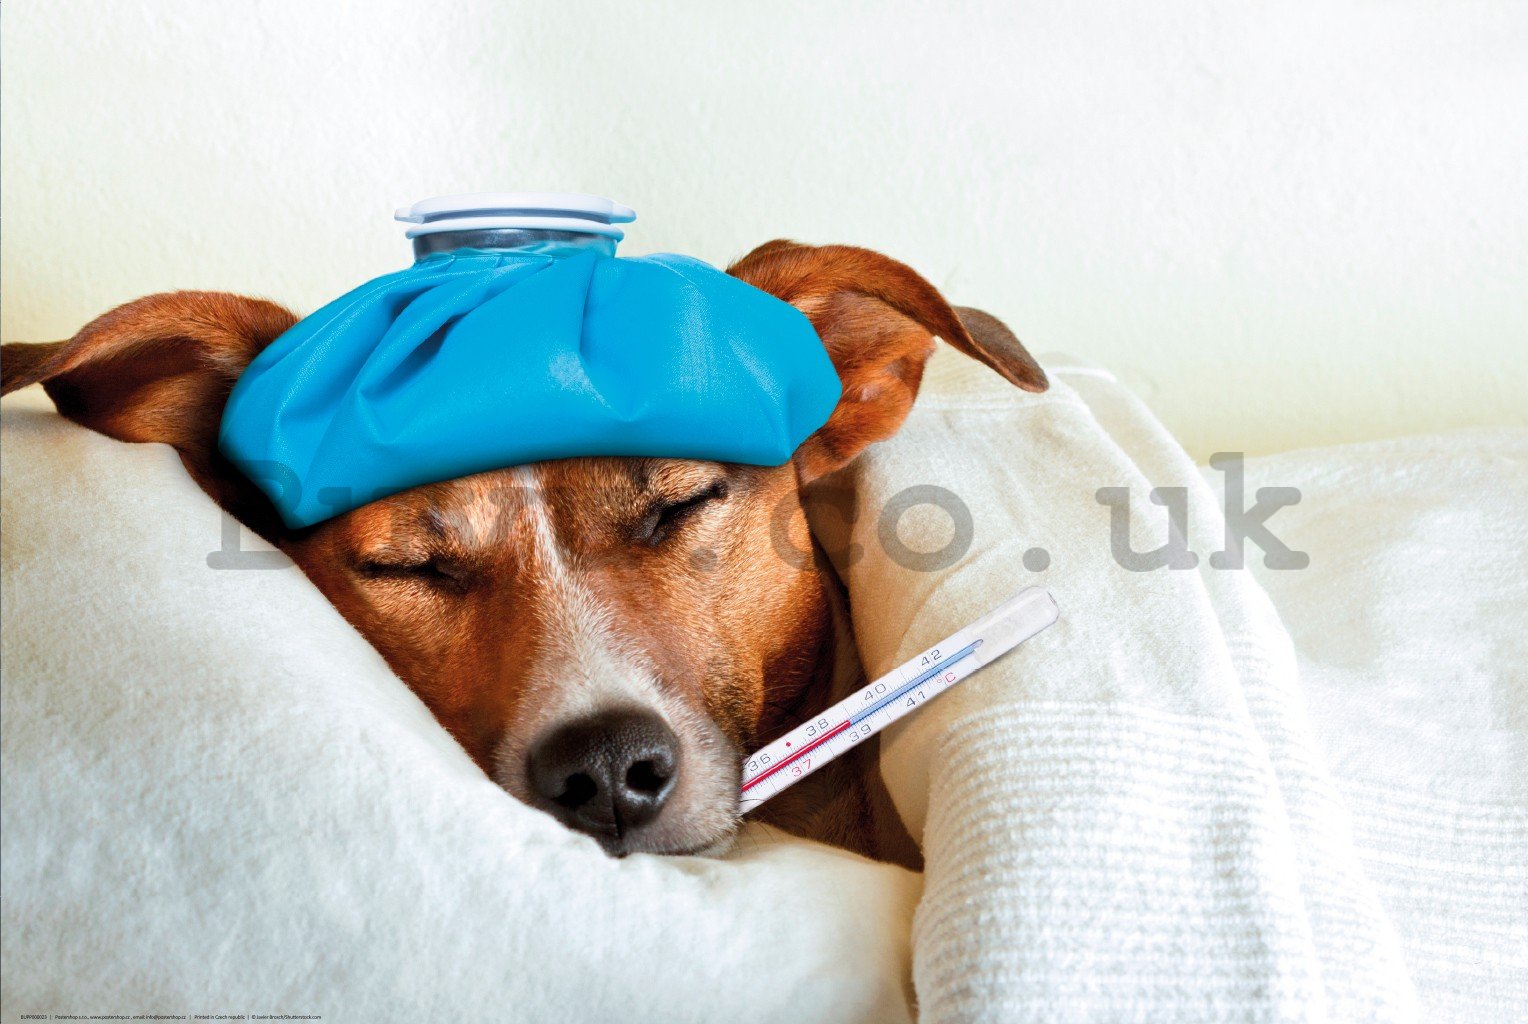 Poster: Jack Russell Terrier (disease)